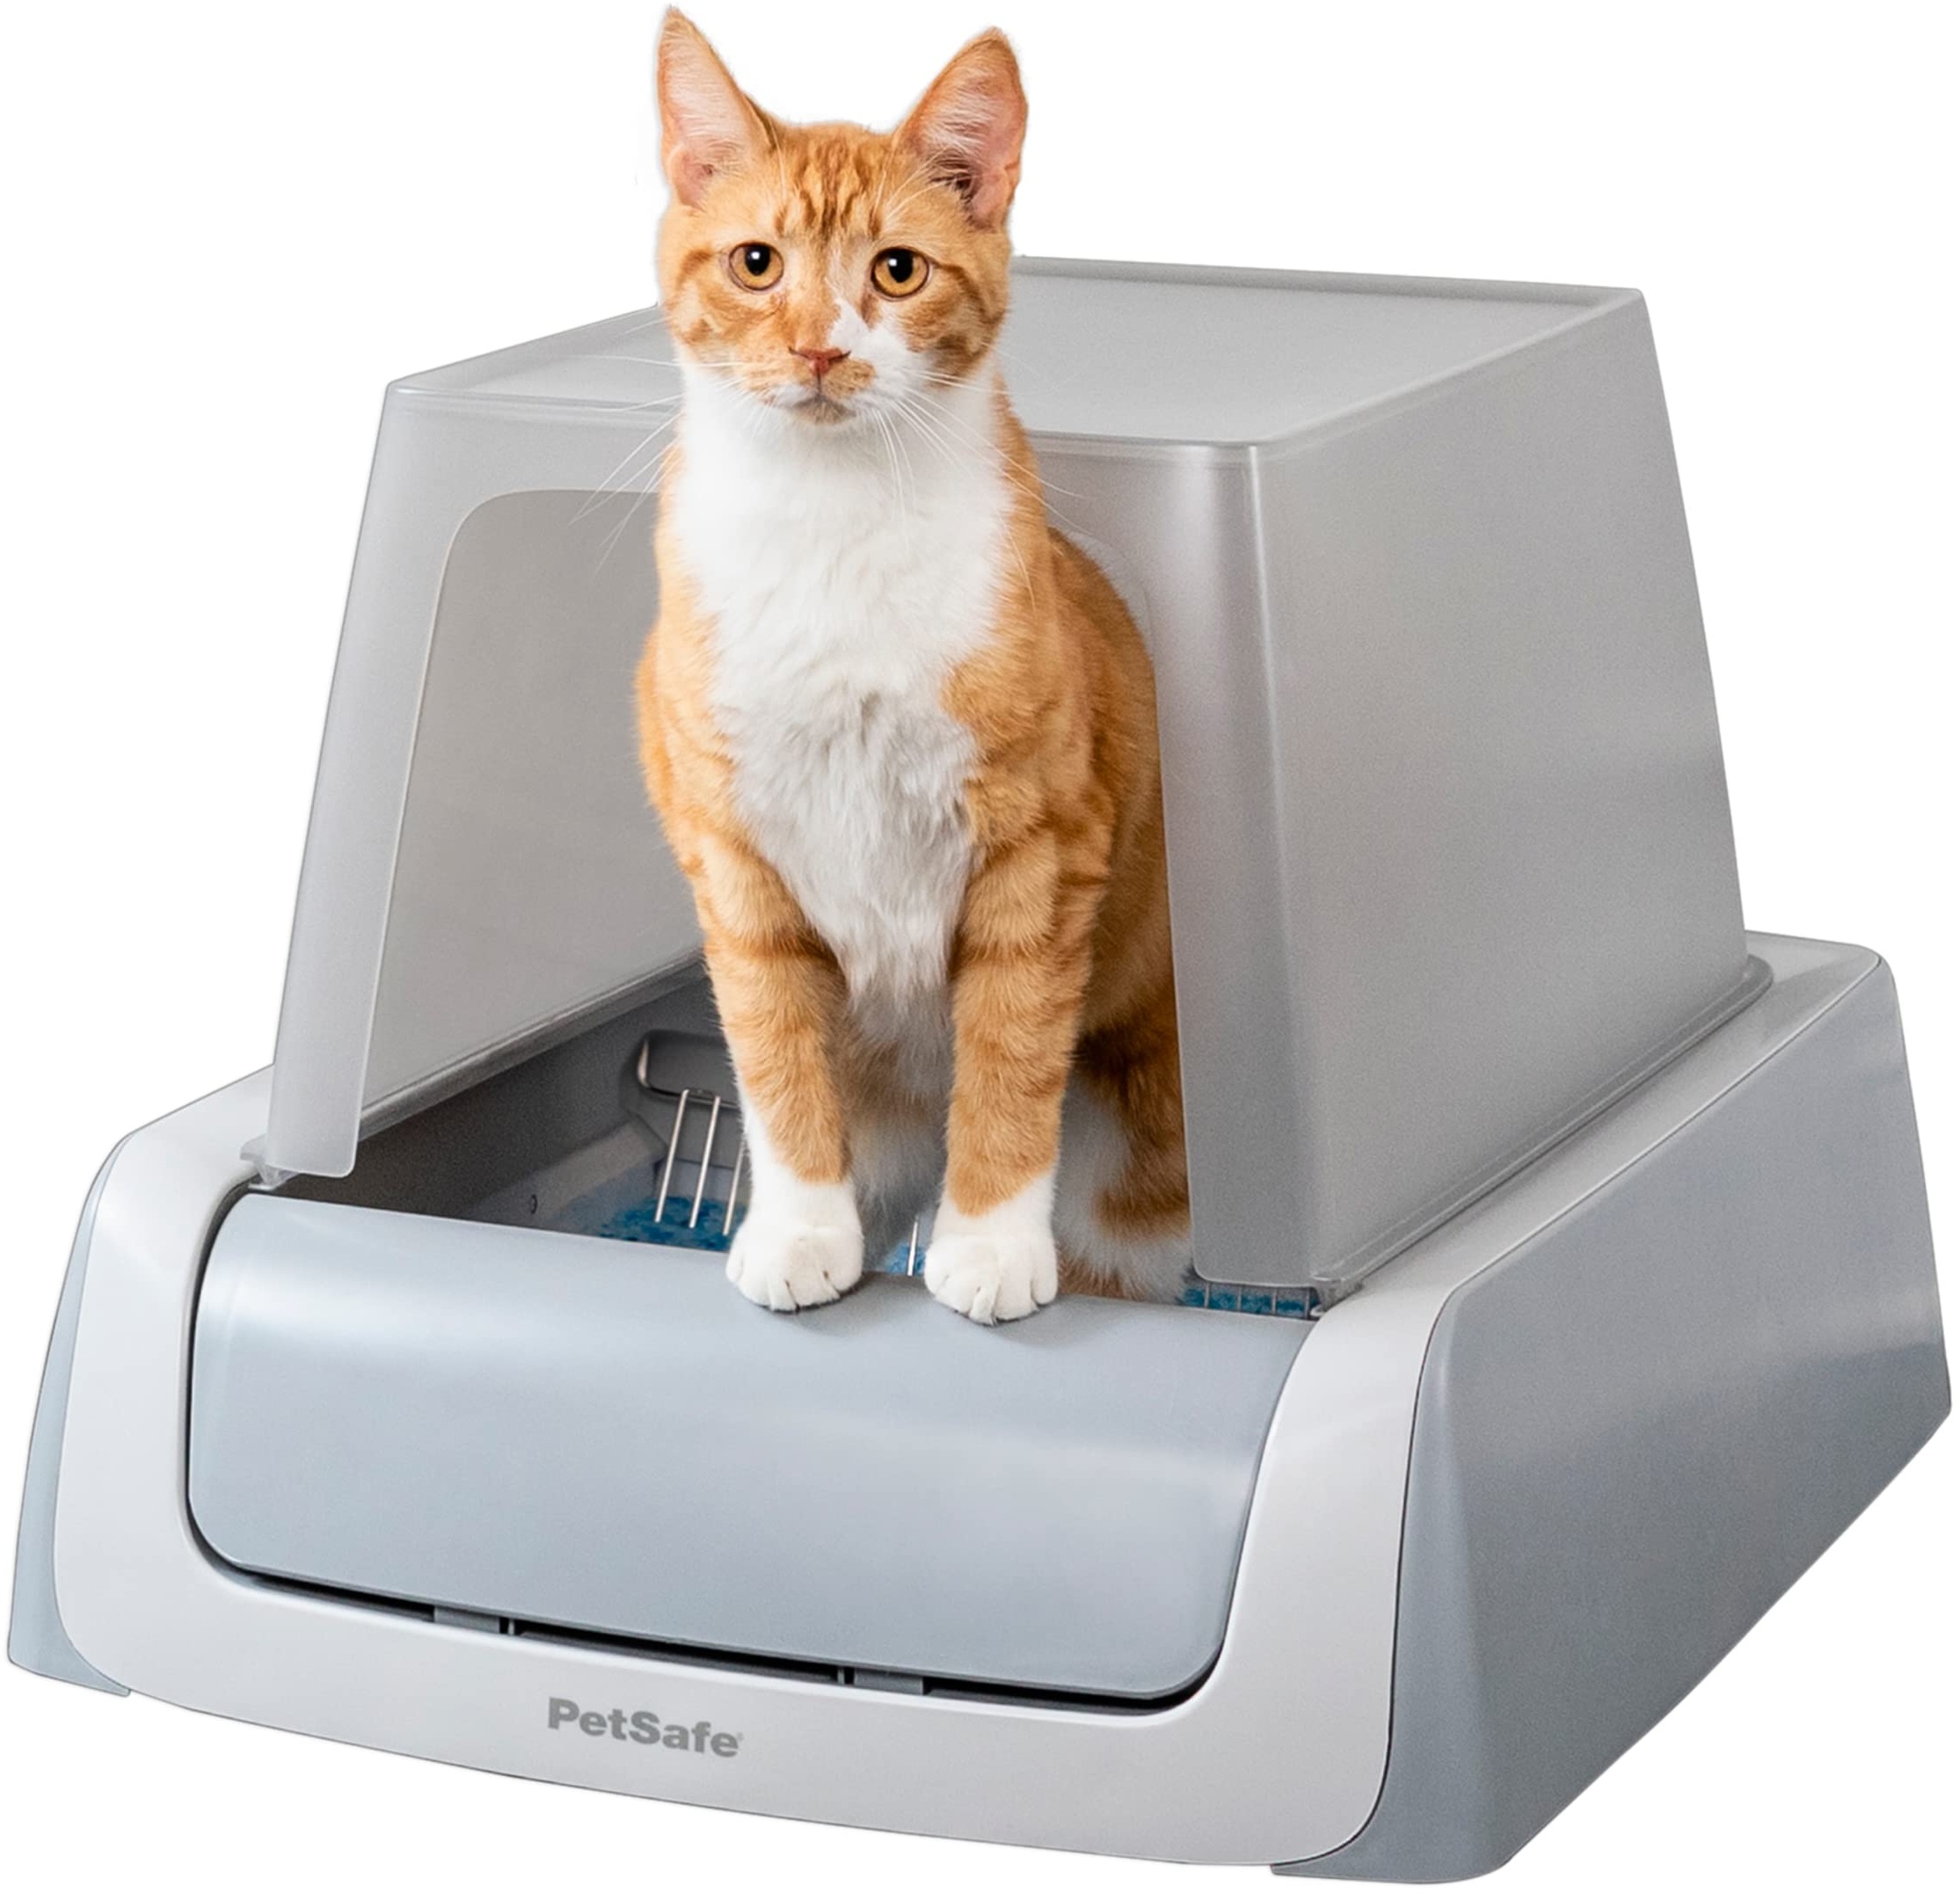 PetSafe Selbstreinigendes Katzenklo PetSafe ScoopFree mit Haube, Elektrische Katzentoilette mit automatischem Rechen, Mit integriertem Gesundheitsmonitor, Grau